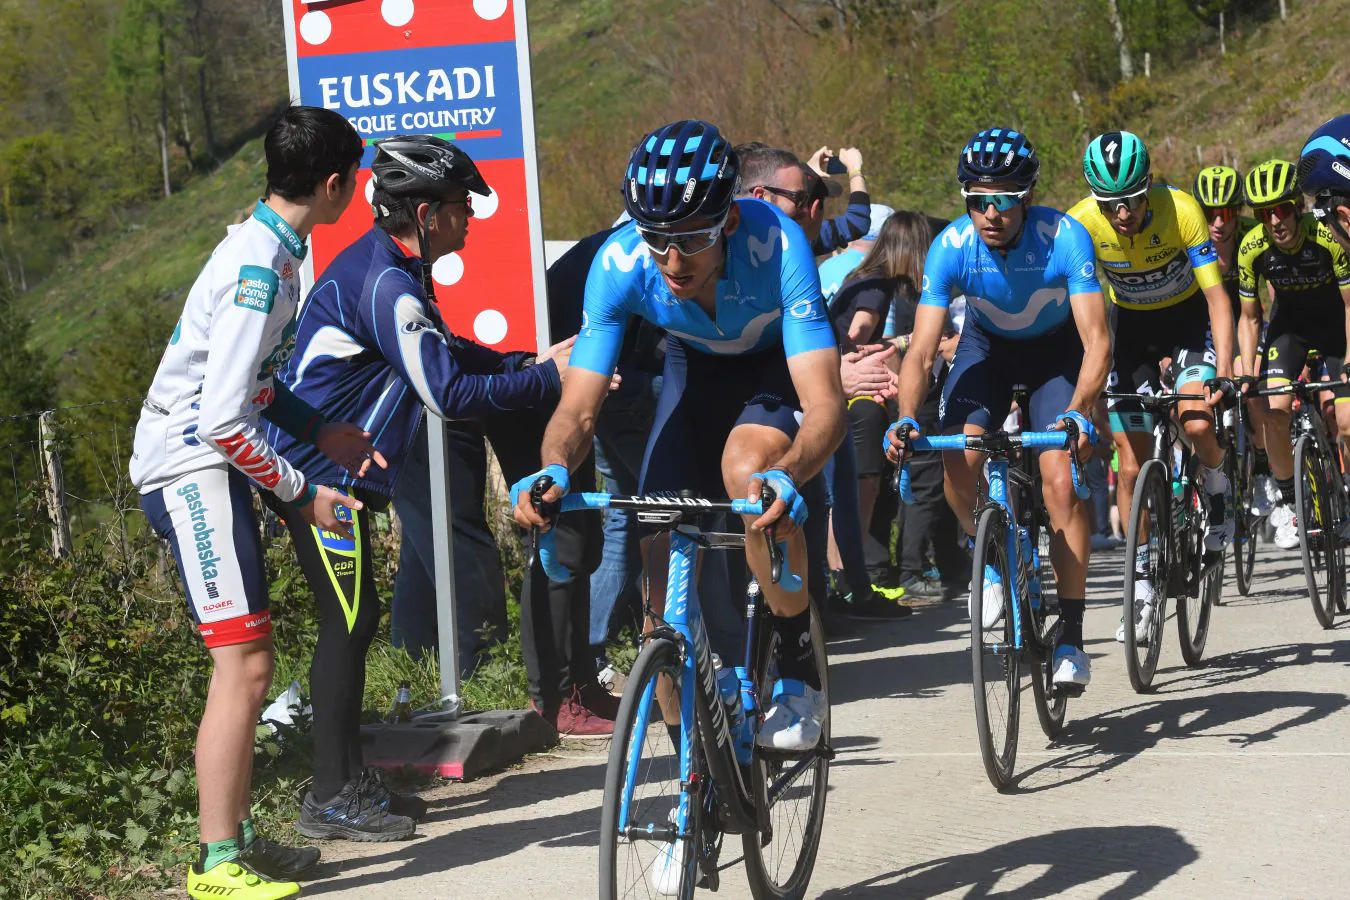 La última etapa de Vuelta al País Vasco, con salida y llegada en Eibar, consta de 118,2 kilómetros y los ciclistas deberán subri seis puetos de montaña.